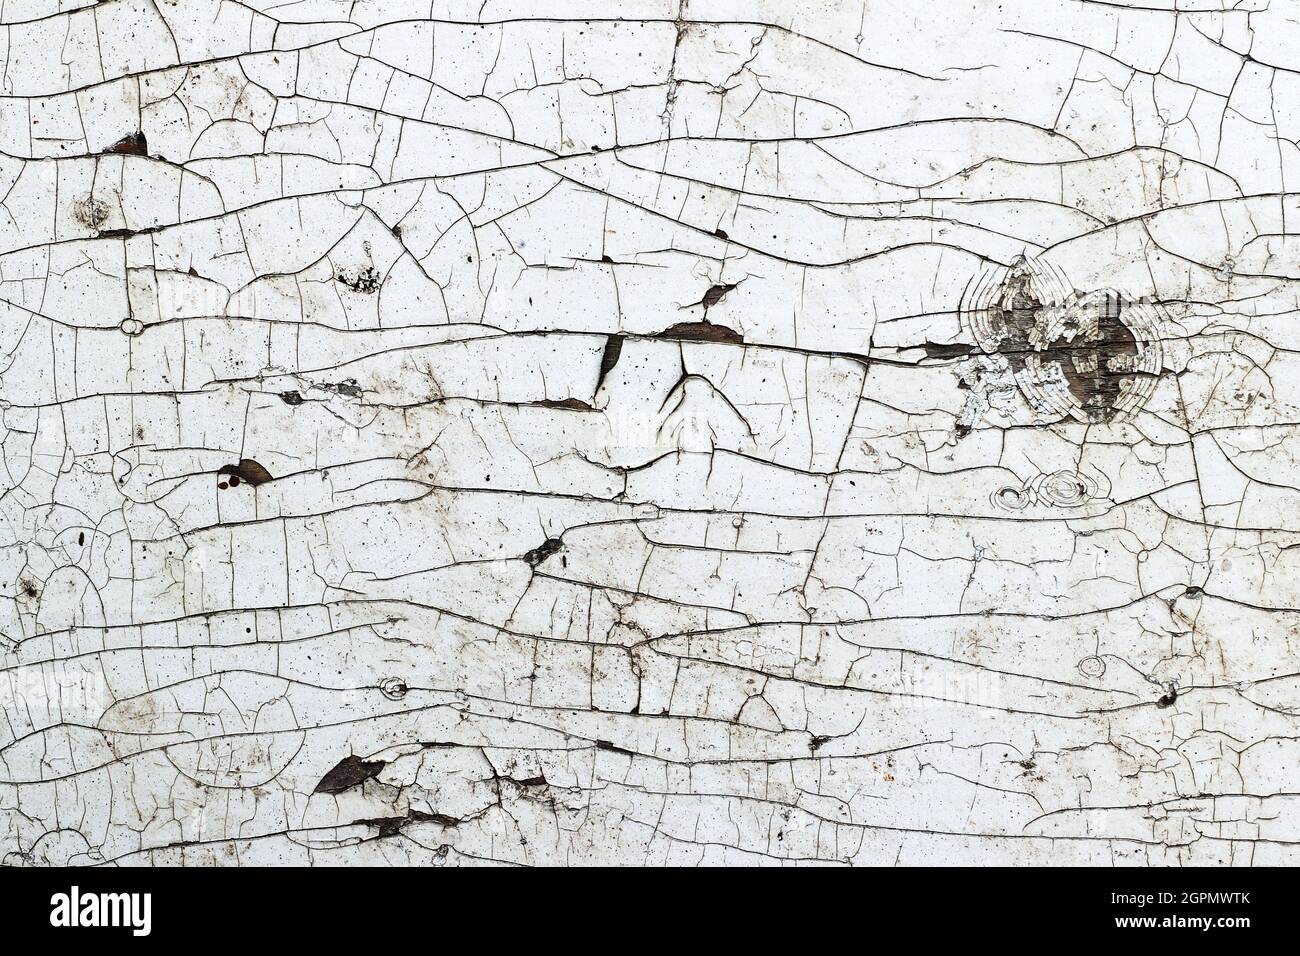 Detalle de las grietas finas en la superficie, textura agrietada Foto de stock